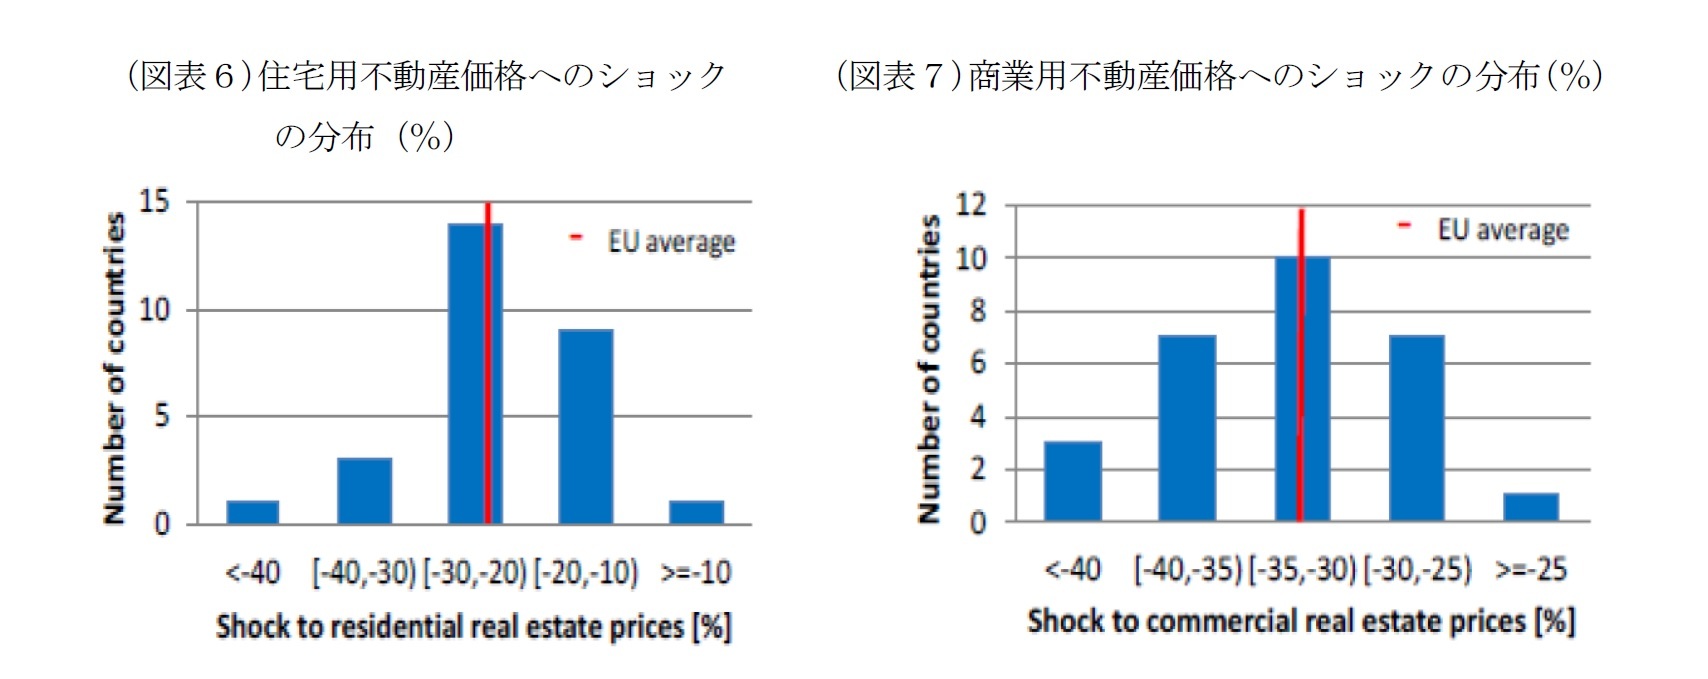 （図表６）住宅用不動産価格へのショックの分布（％）/（図表７）商業用不動産価格へのショックの分布（％）